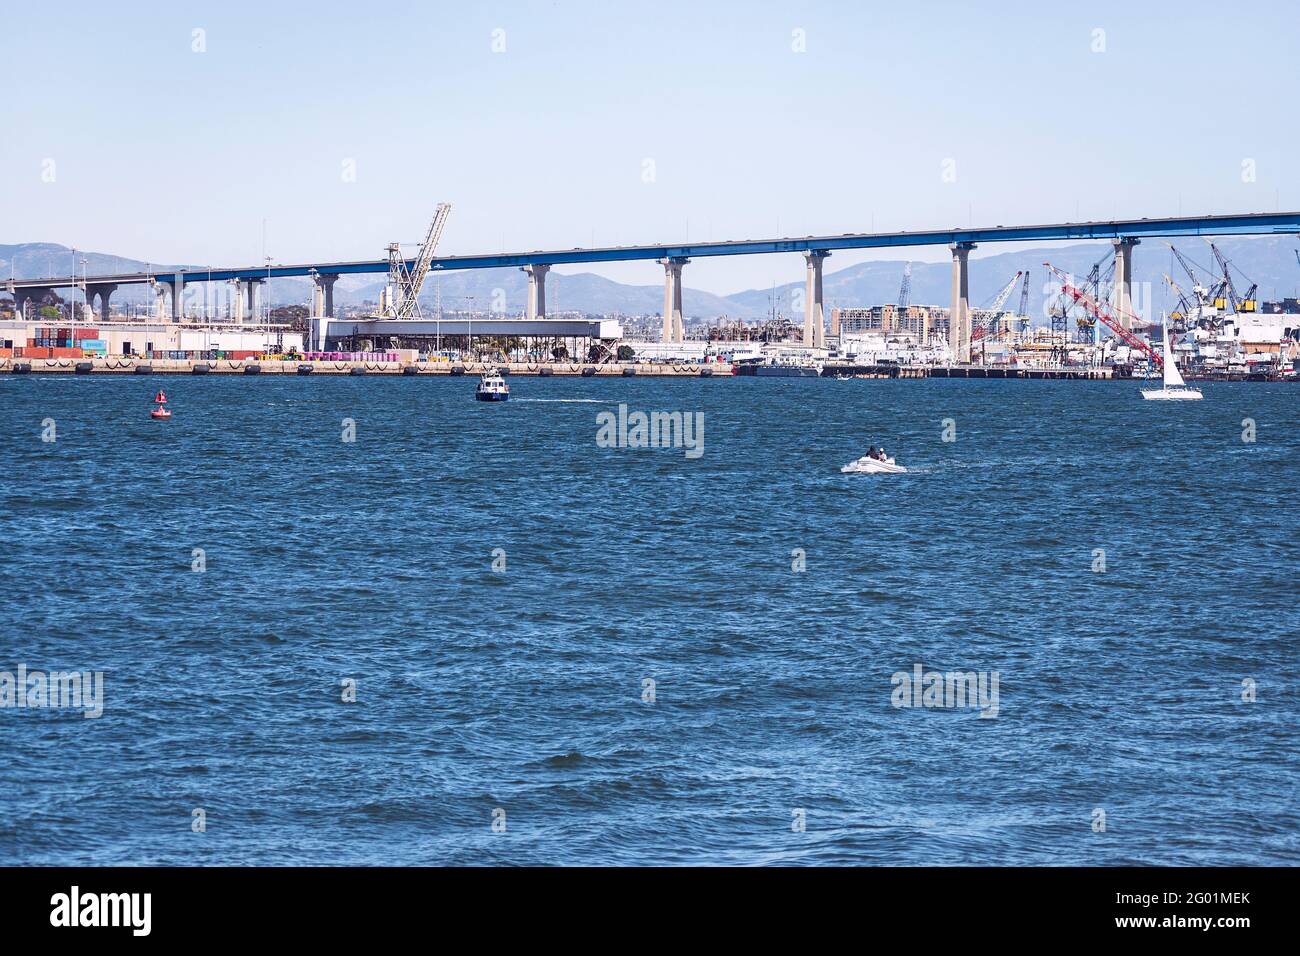 Ein Ausschnitt der Coronado Brücke in San Diego zeigt Werften unter der Brücke mit Bergen im Hintergrund und Boote in der Bucht von San Diego in Th Stockfoto